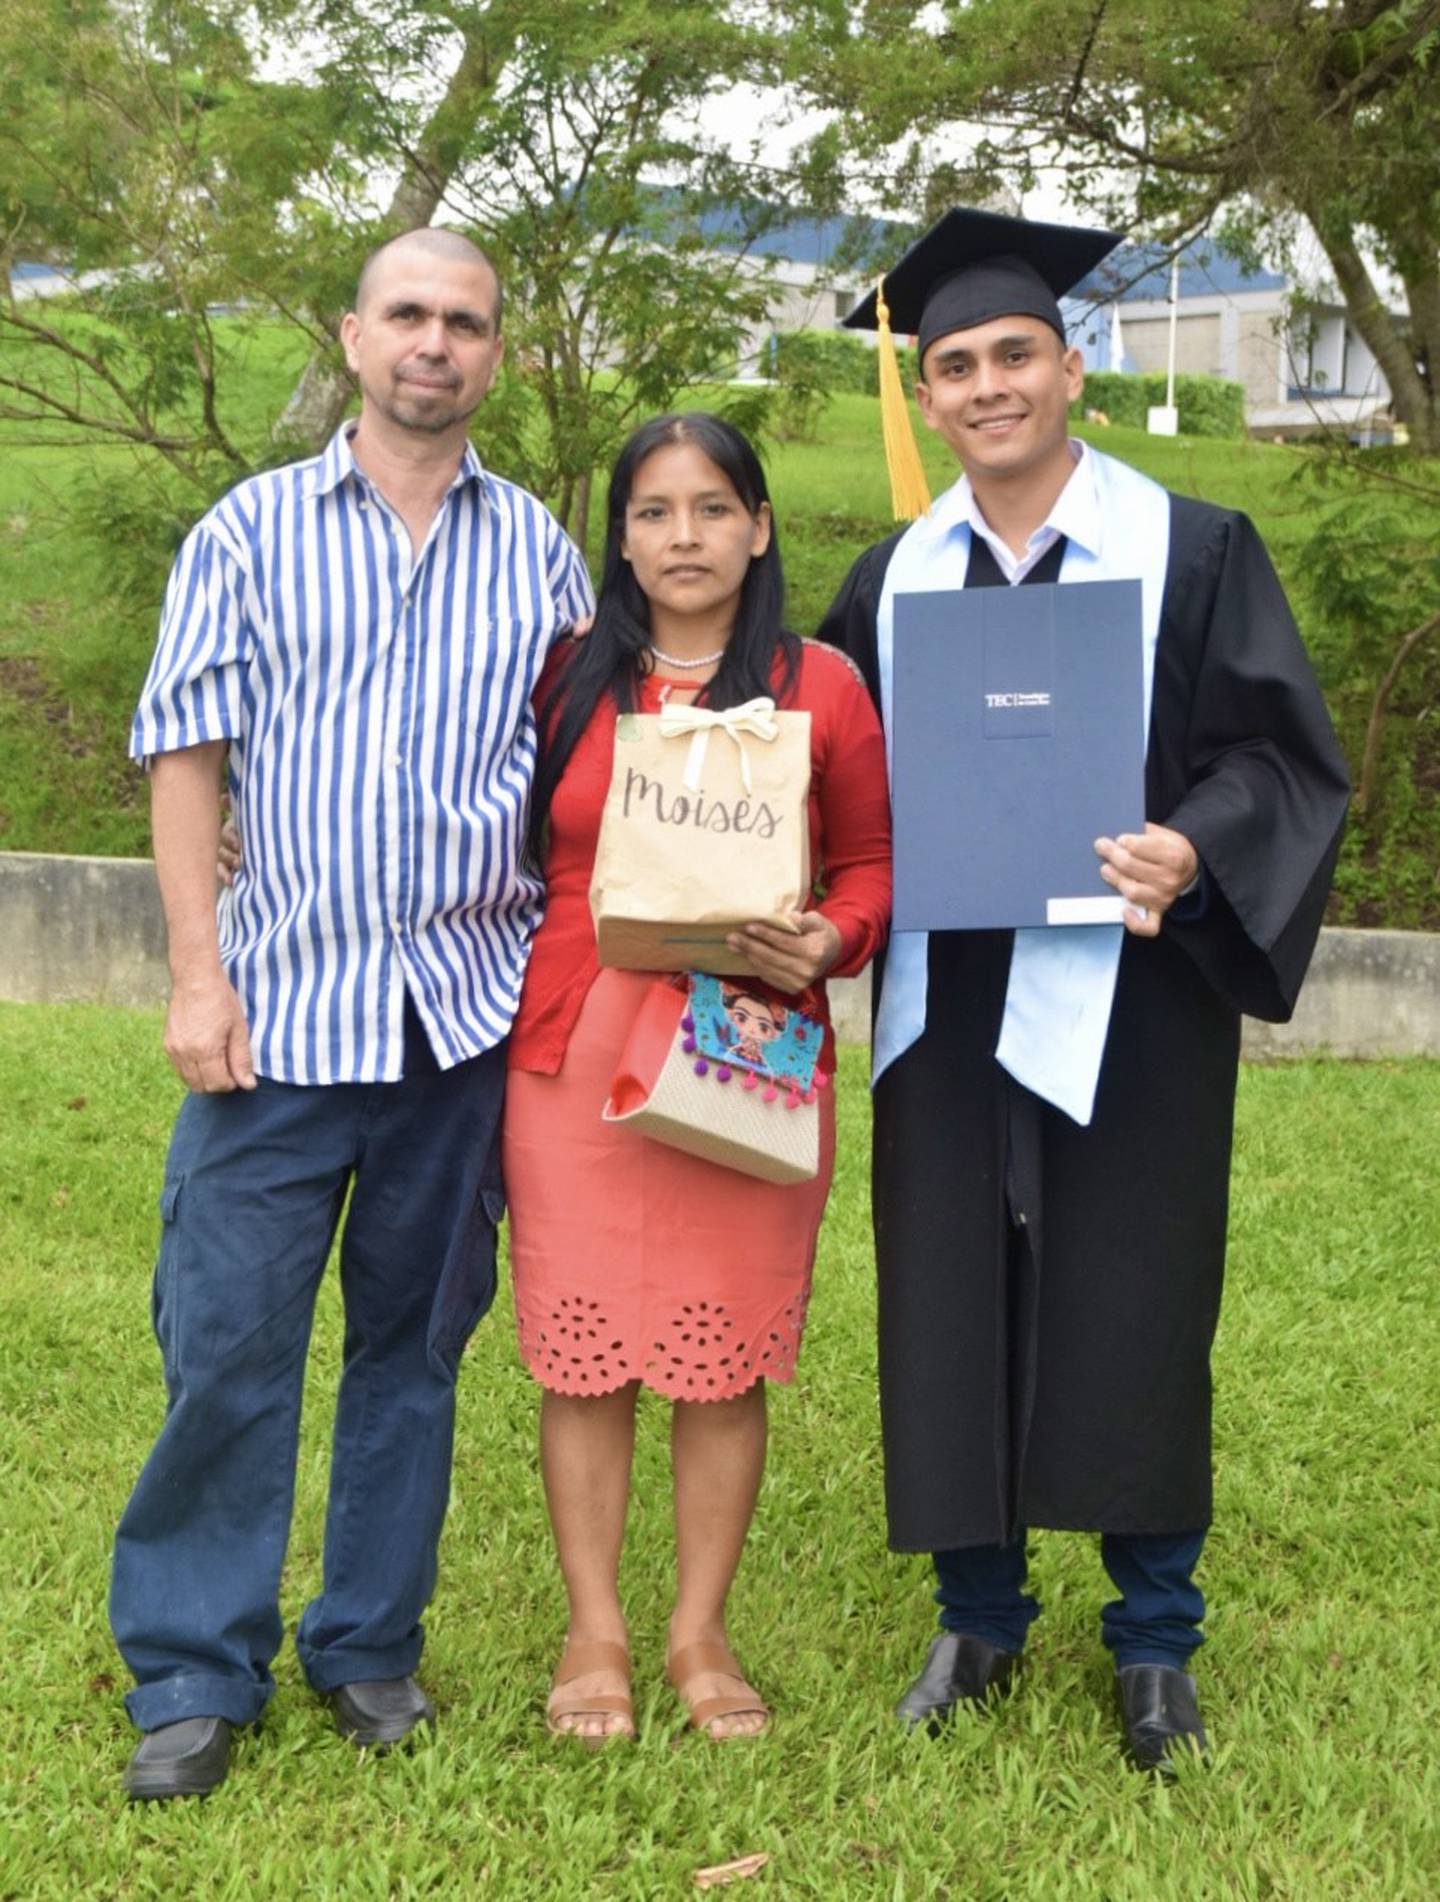 Moisés Morales junto a sus padres  Baudilia Morales Ruiz y Javier Salguero Arias el día de la graduación. El joven cuenta que ellos son las personas que más lo inspiran. Foto: Moisés Salguero para LN